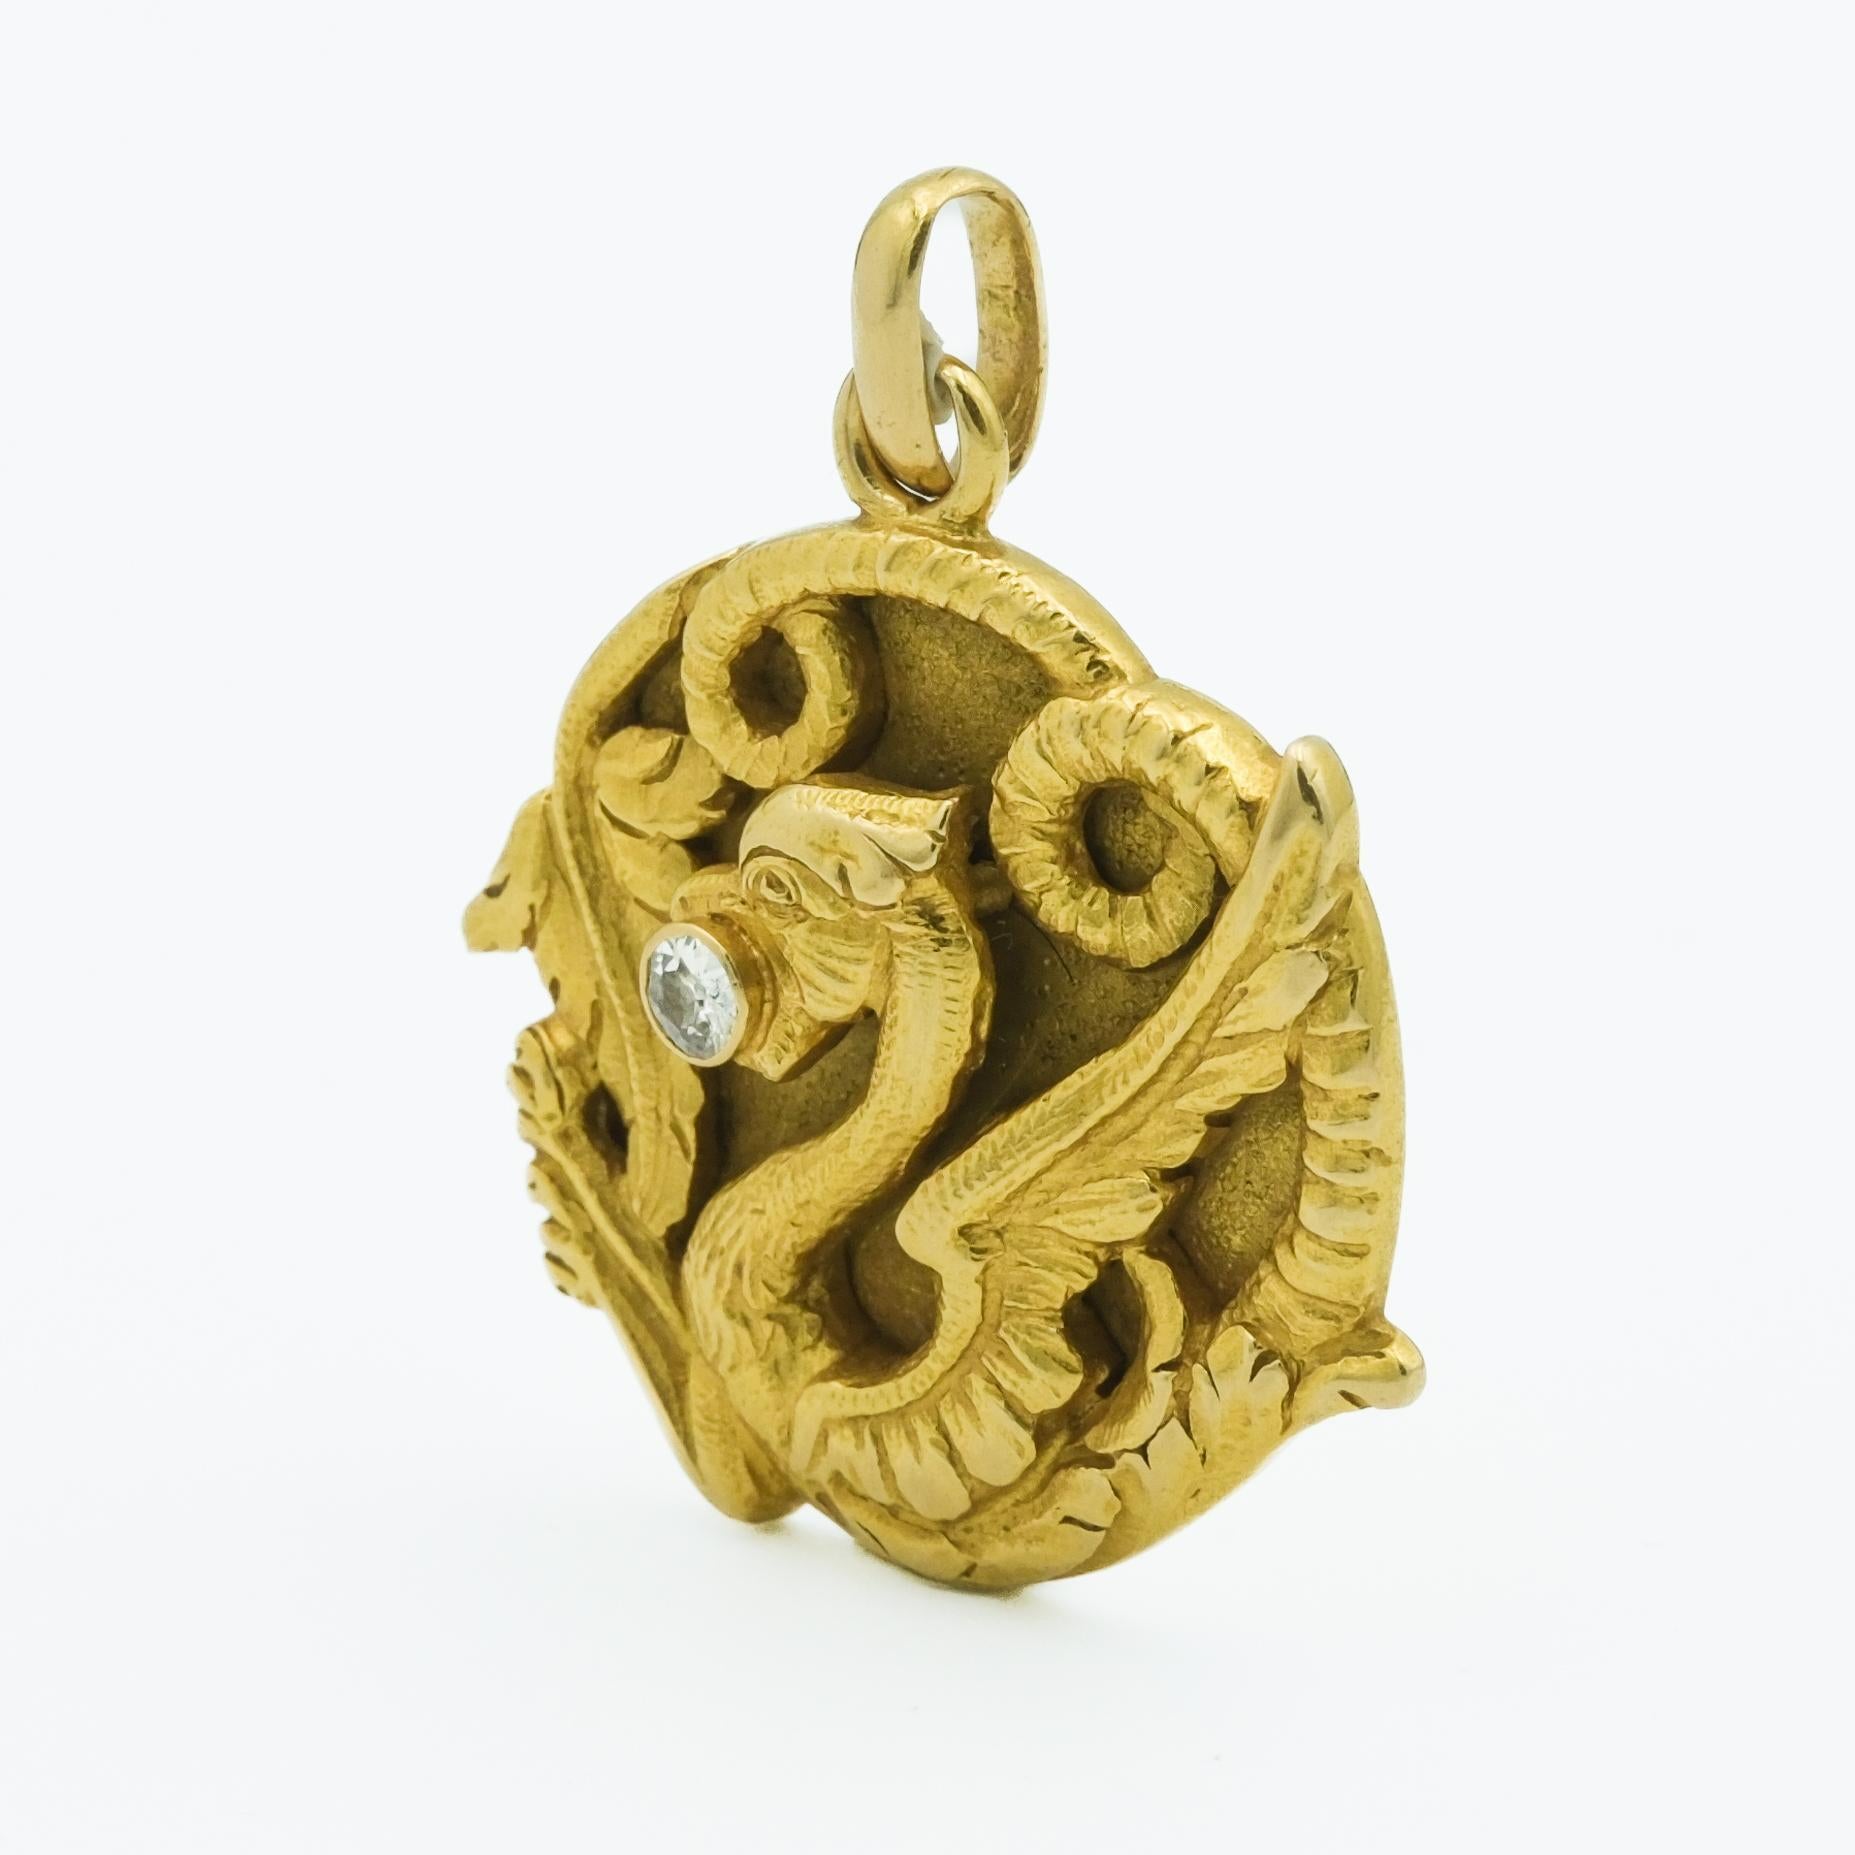 Dieser Drachenanhänger aus 18 Karat Gelbgold ist ein Meisterwerk des Jugendstils, das für sein kompliziertes Design und seine bezaubernde historische Bedeutung bekannt ist. Der Anhänger zeigt einen stilisierten Drachen, der in meisterhafter